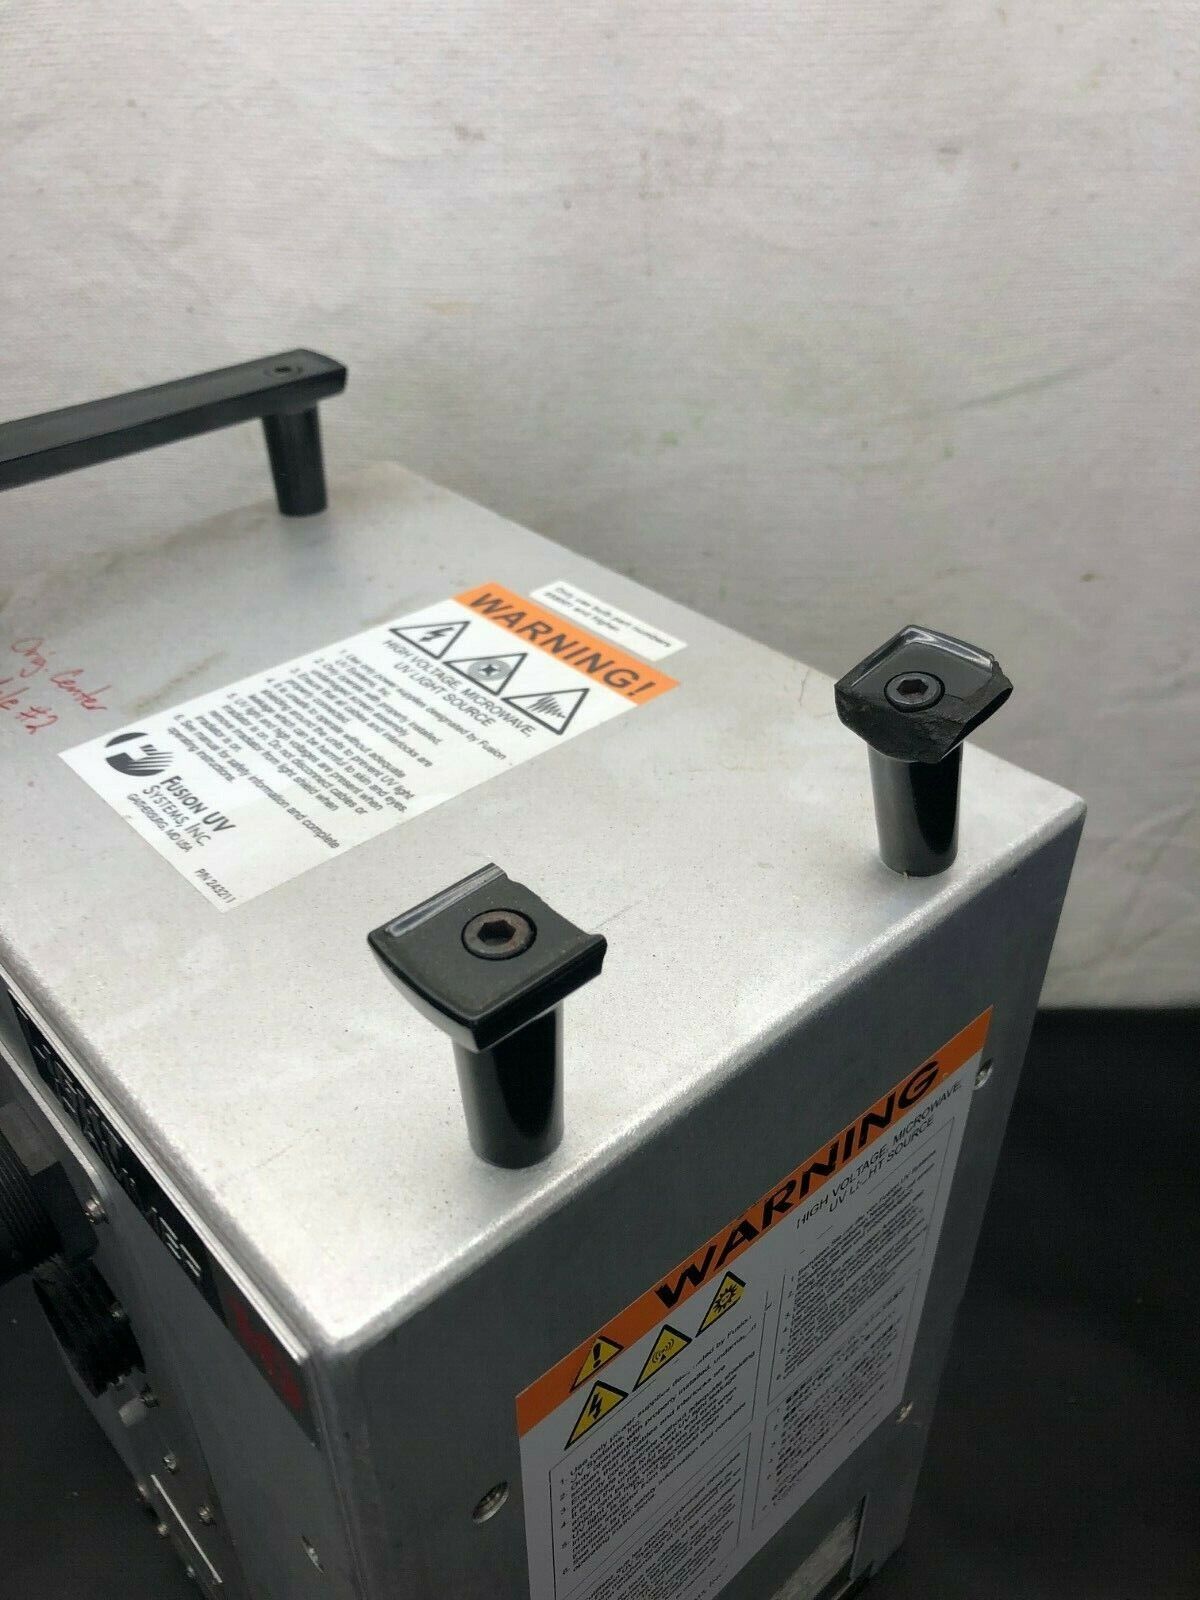 Fusion UV Light Hammer Irradiator LH10 Fusion UV Systems, Inc. Does Not Apply